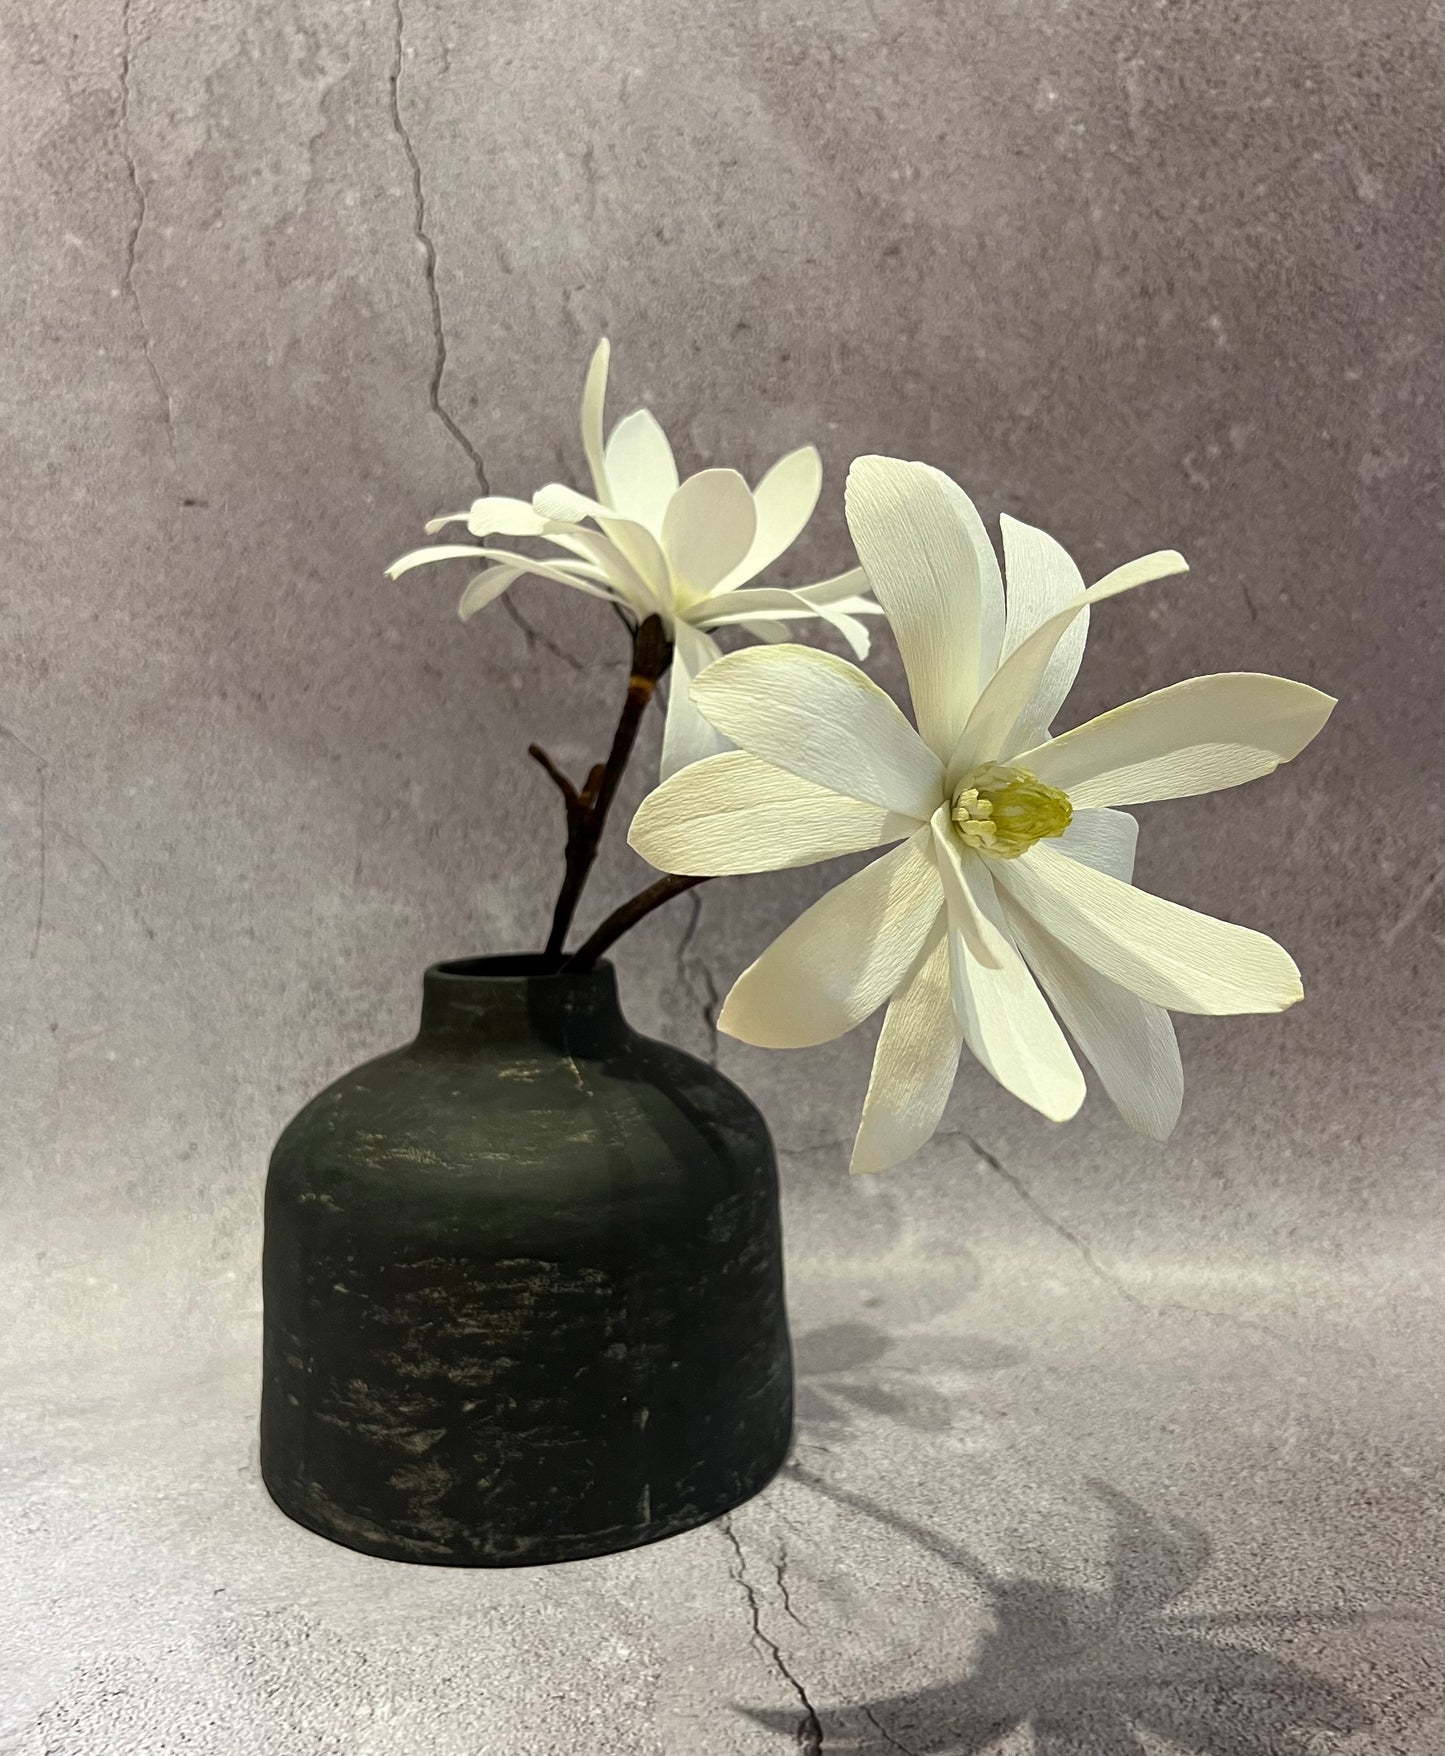 White Star Magnolia in vase